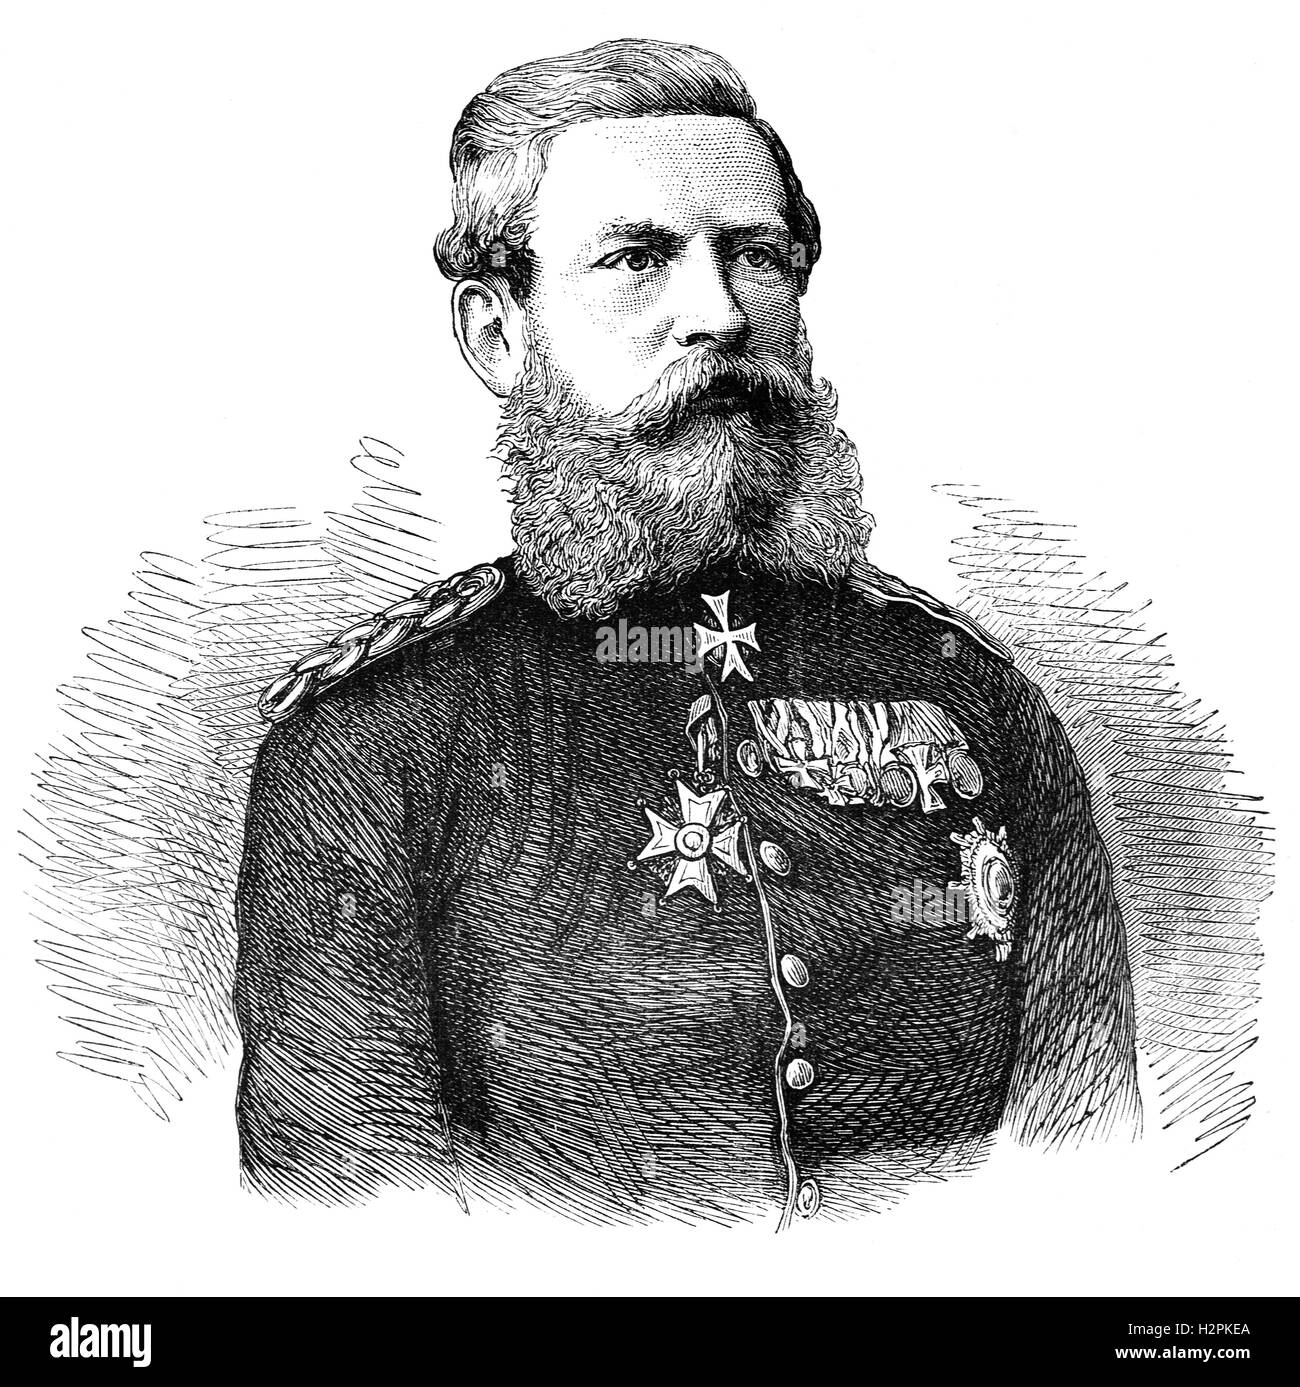 Frédéric III, Le Prince Friedrich Wilhelm Nikolaus Karl, de Prusse (1831 - 1888) a été l'empereur allemand et roi de Prusse après la mort de son père Wilhelm. Son règne a duré quatre-vingt-dix-neuf jours jusqu'à sa mort en 1888 - qui est devenu connu comme l'année des trois empereurs. Banque D'Images